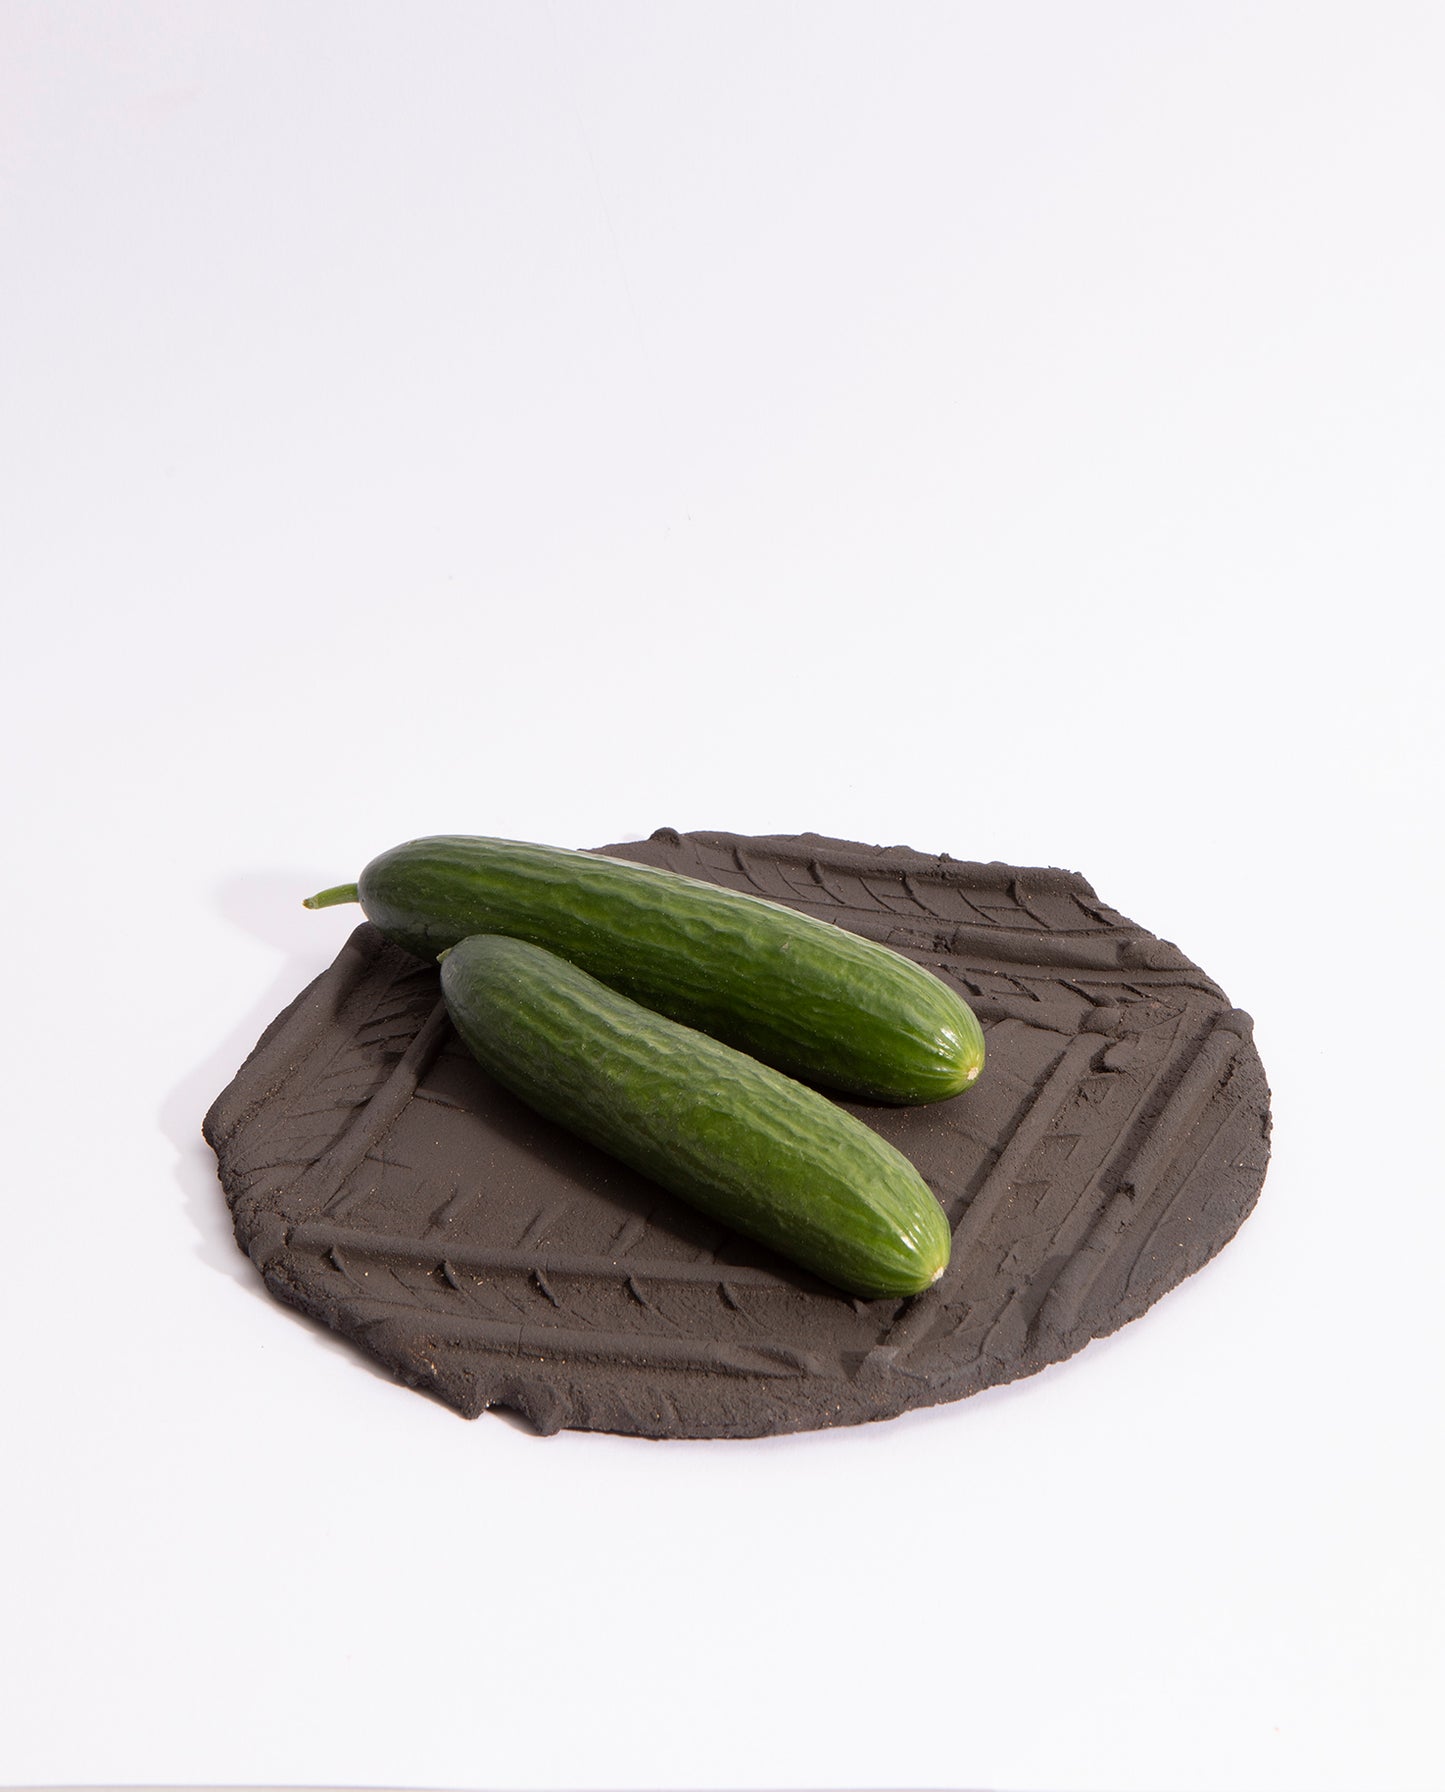 Assiette en grès noir brut, avec quatre empreintes de pneu qui forme un carré sur l'assiette. Deux concombres sont dessus.